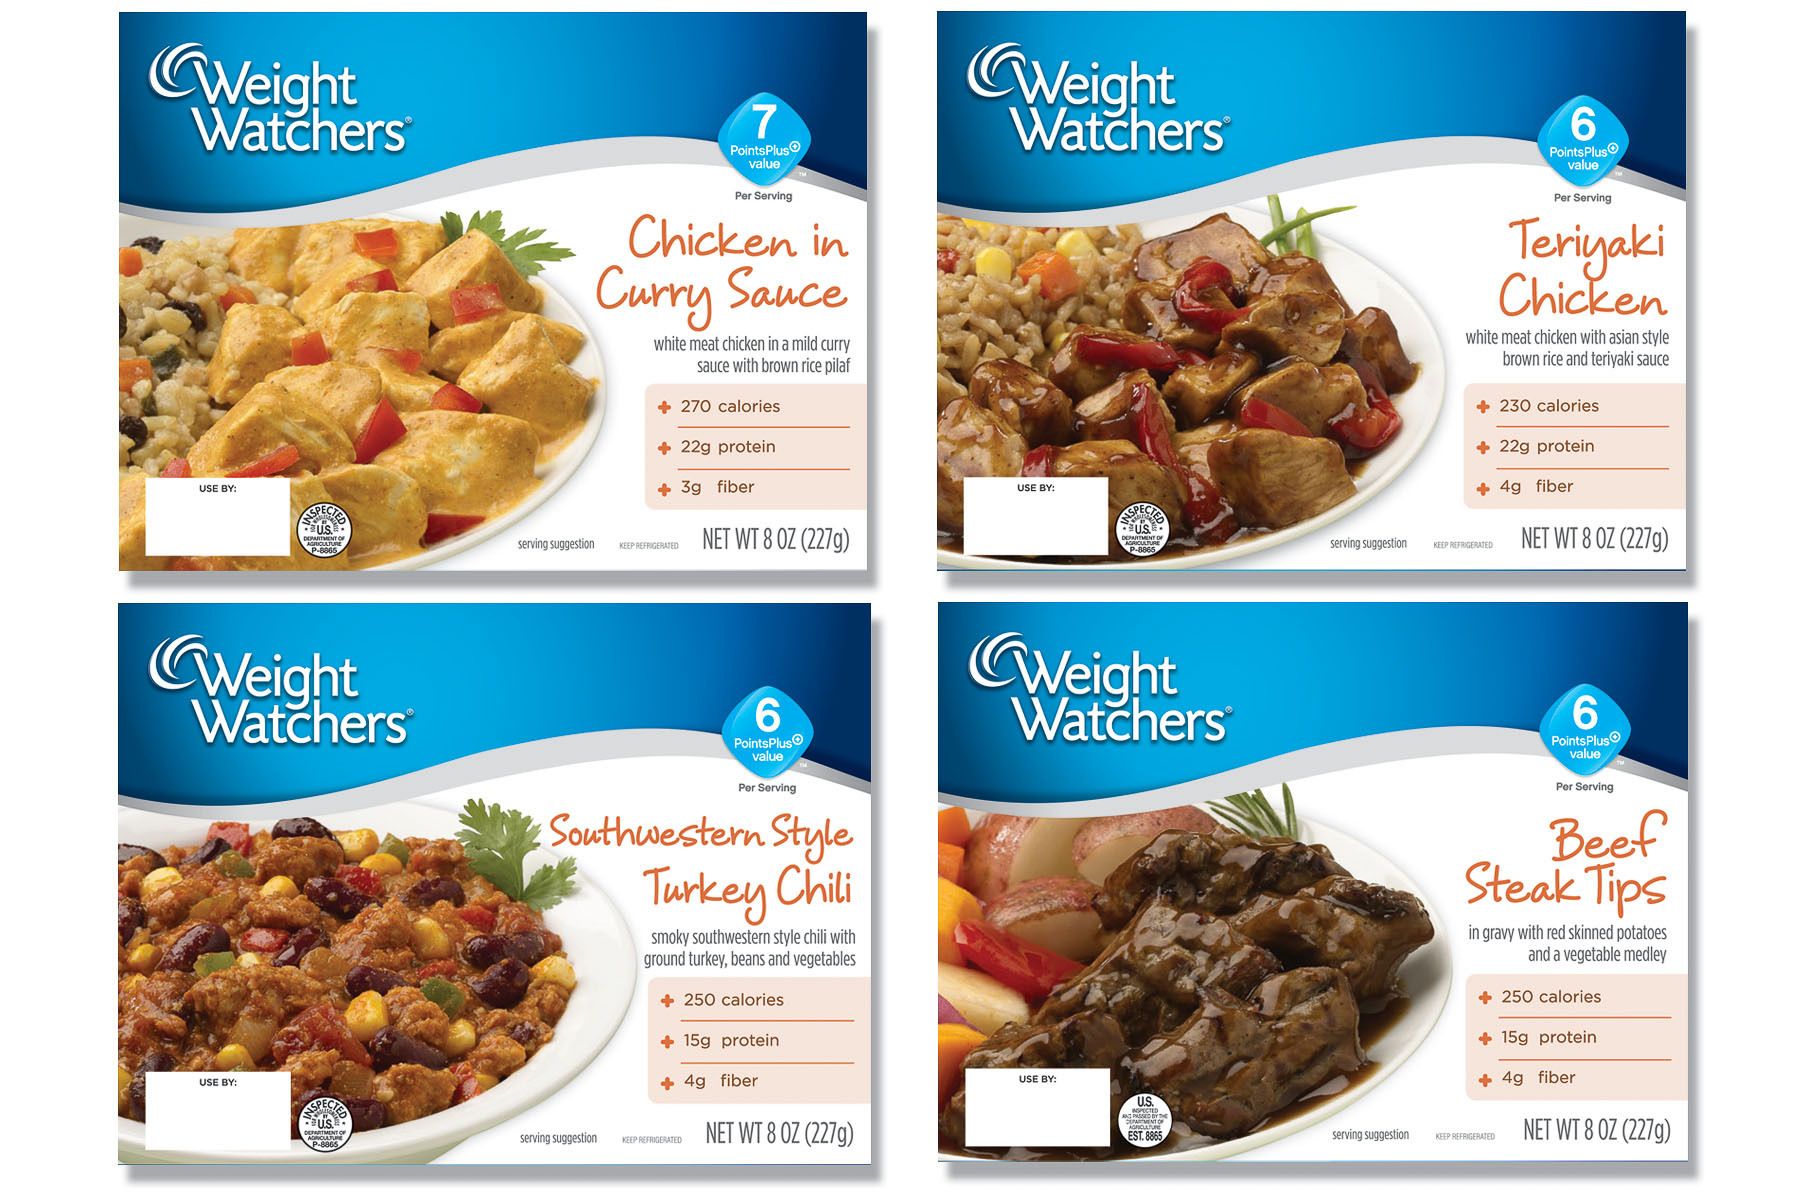 Weight Watchers packaging